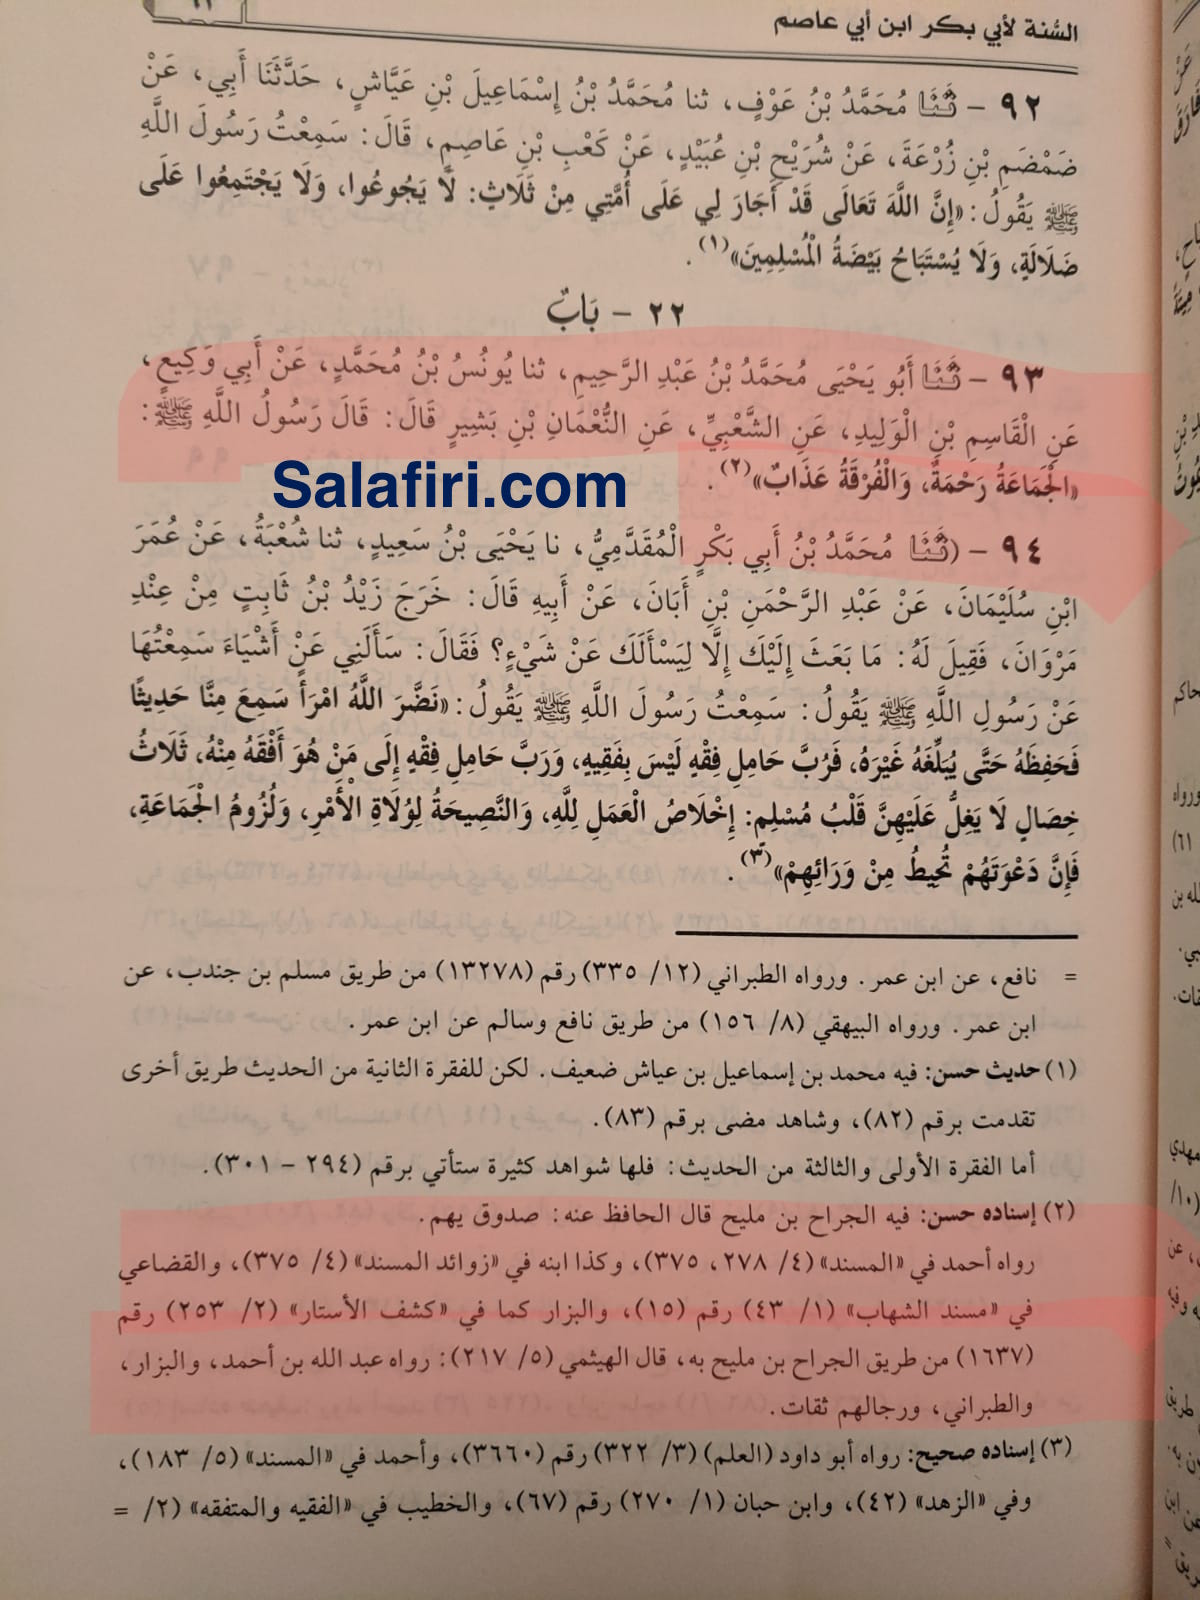 al-sunnah text.jpeg